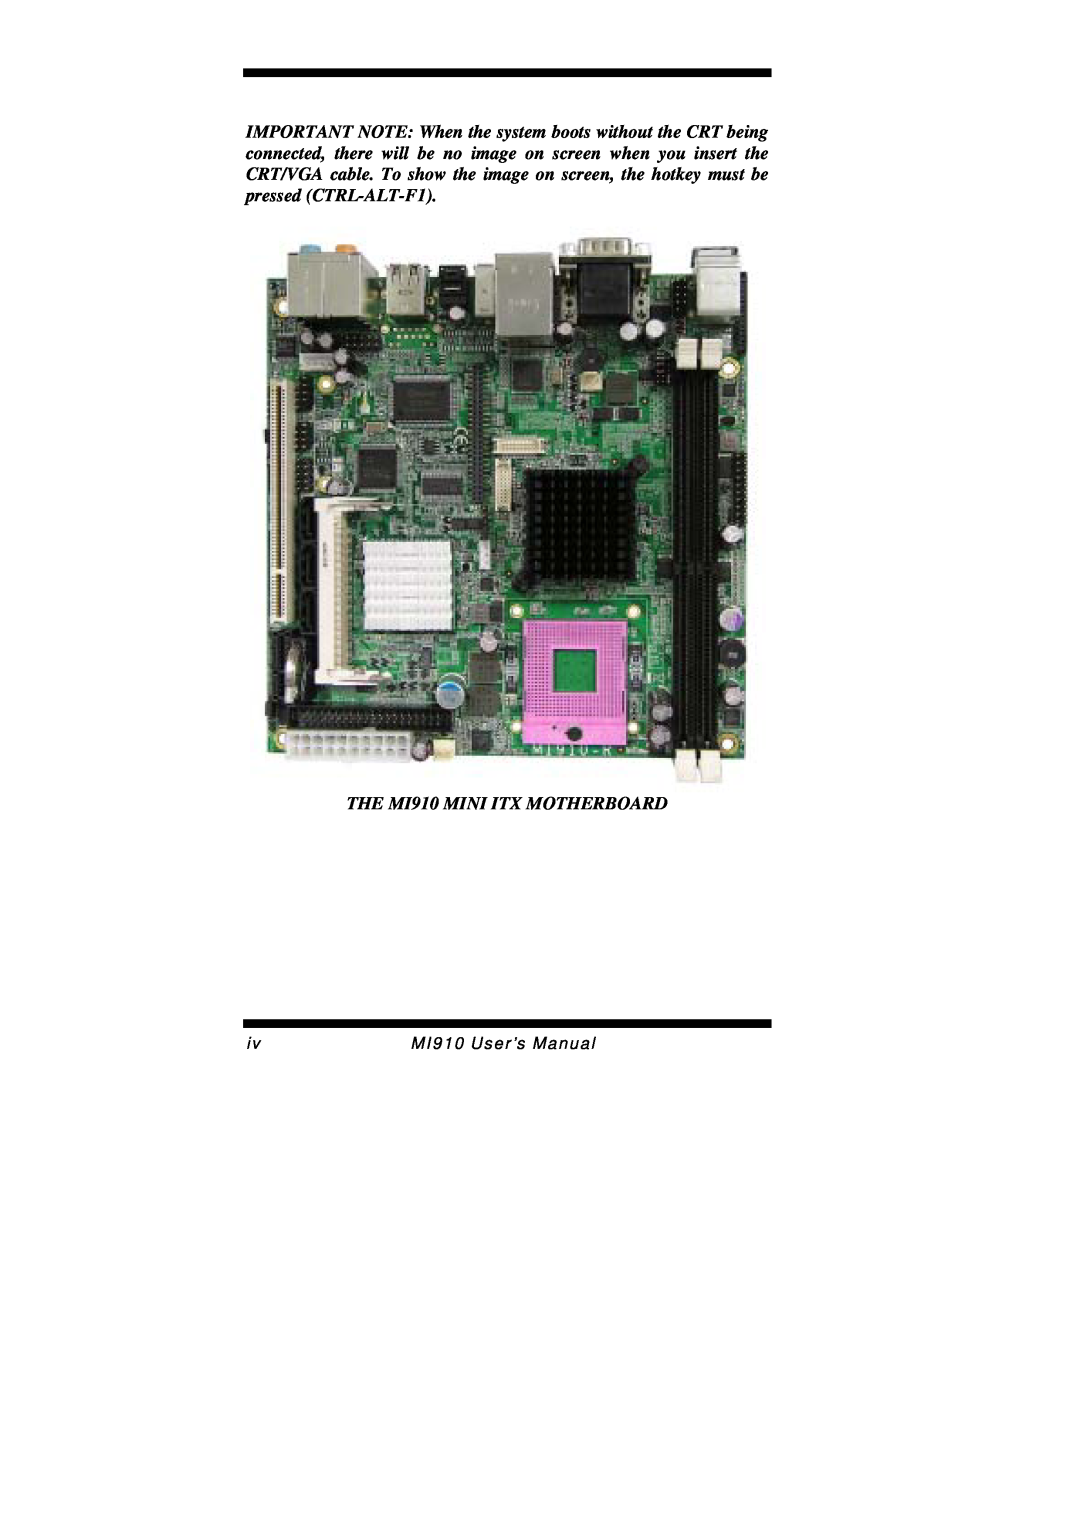 Intel MI910F user manual THE MI910 MINI ITX MOTHERBOARD, MI910 User’s Manual 